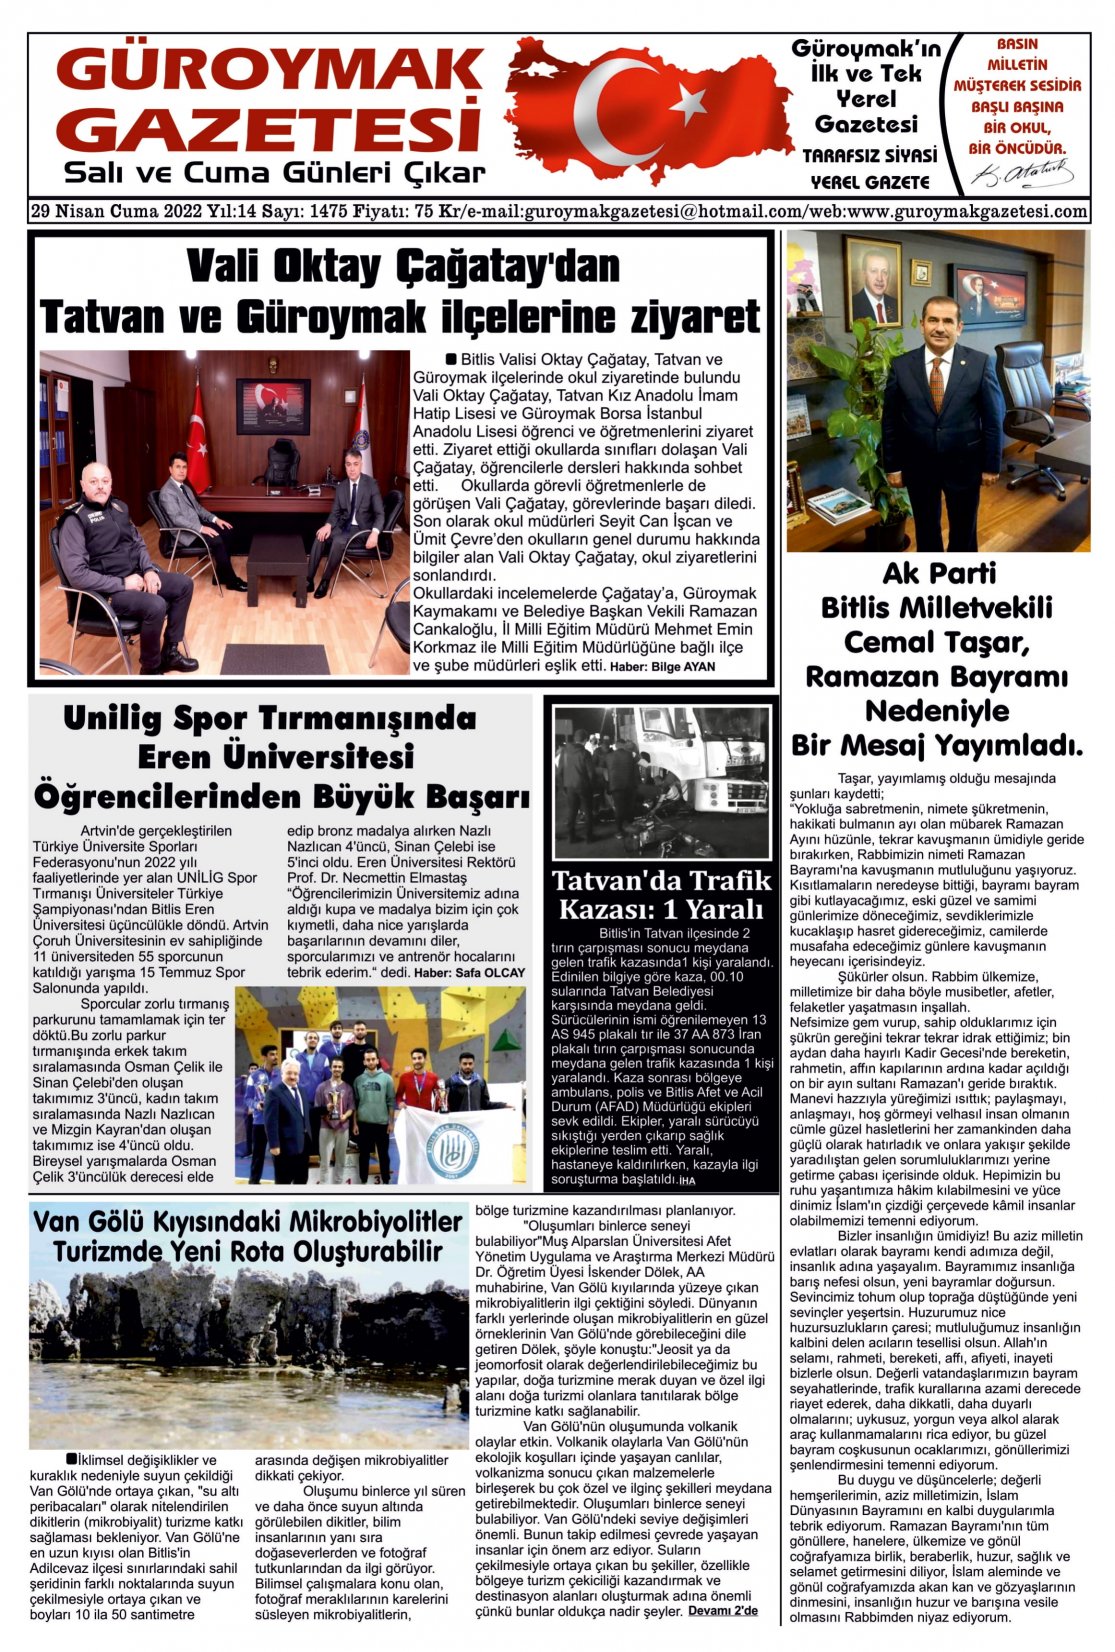 Güroymak Gazetesi 1.jpg Sayılı Gazete Küpürü